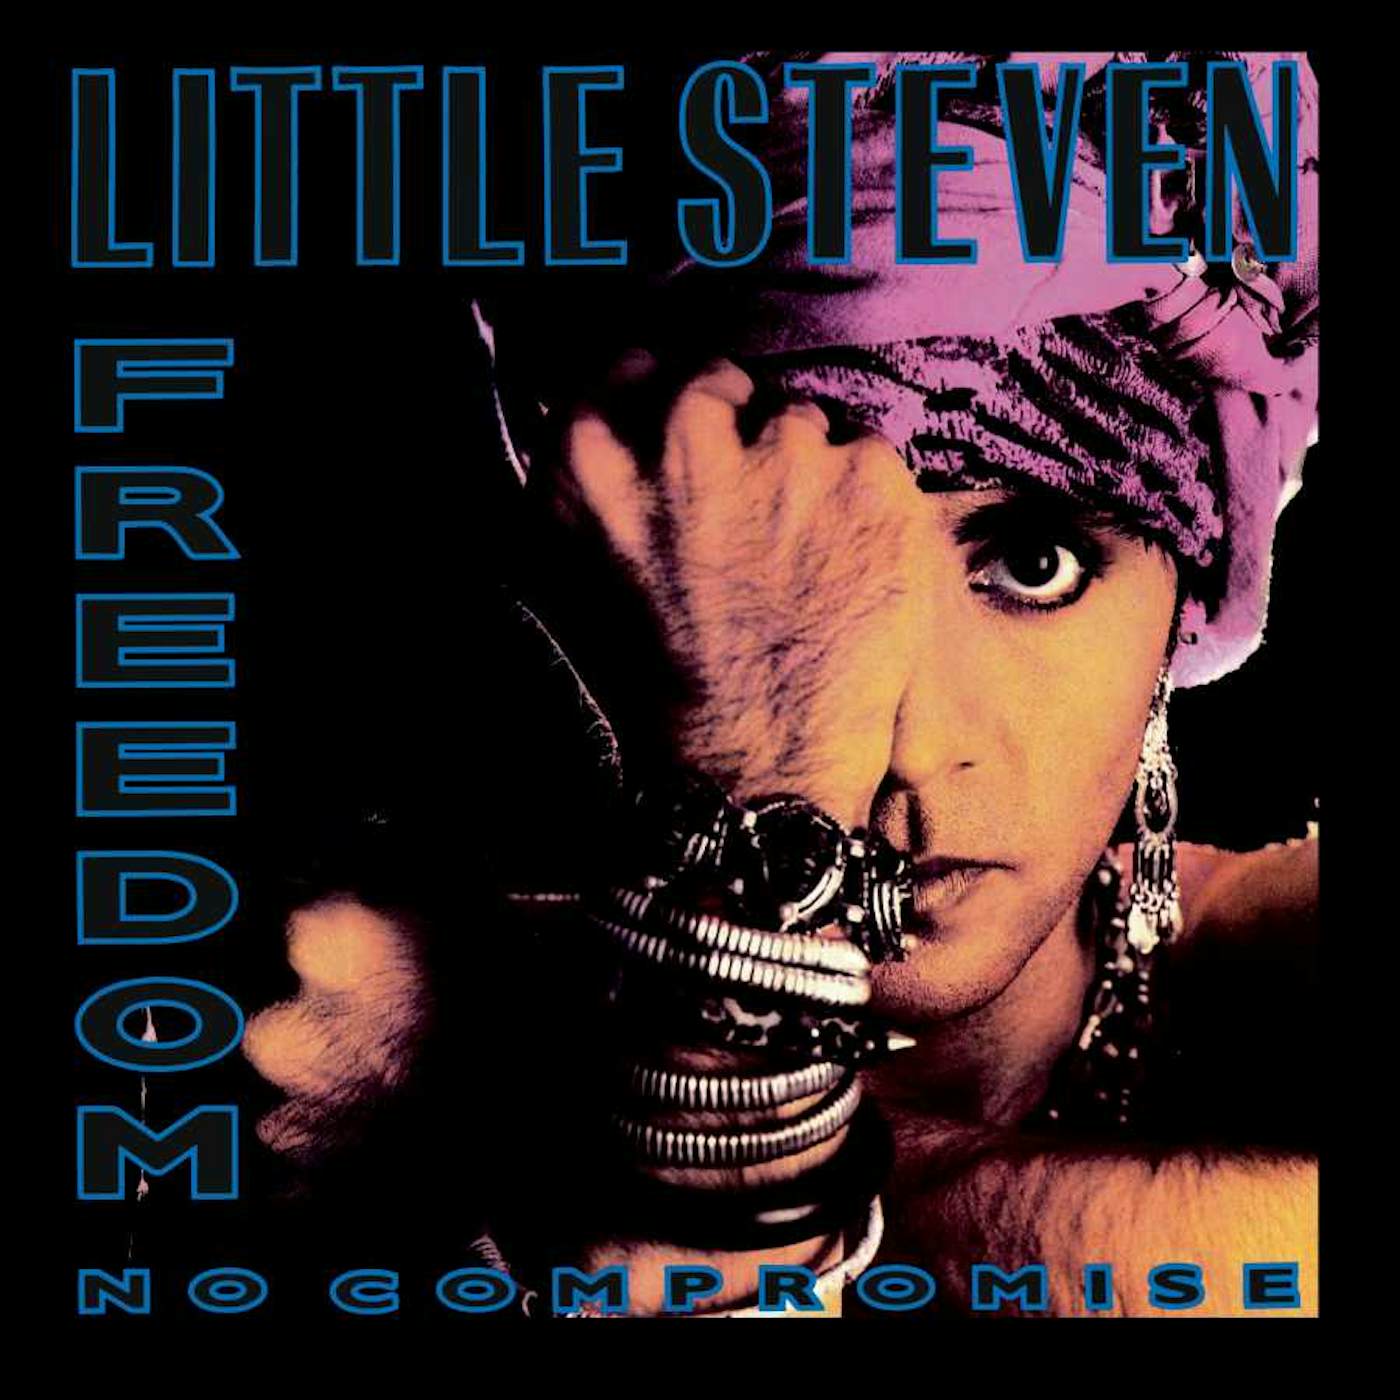 Little Steven FREEDOM - NO COMPROMISE (CD/DVD) CD